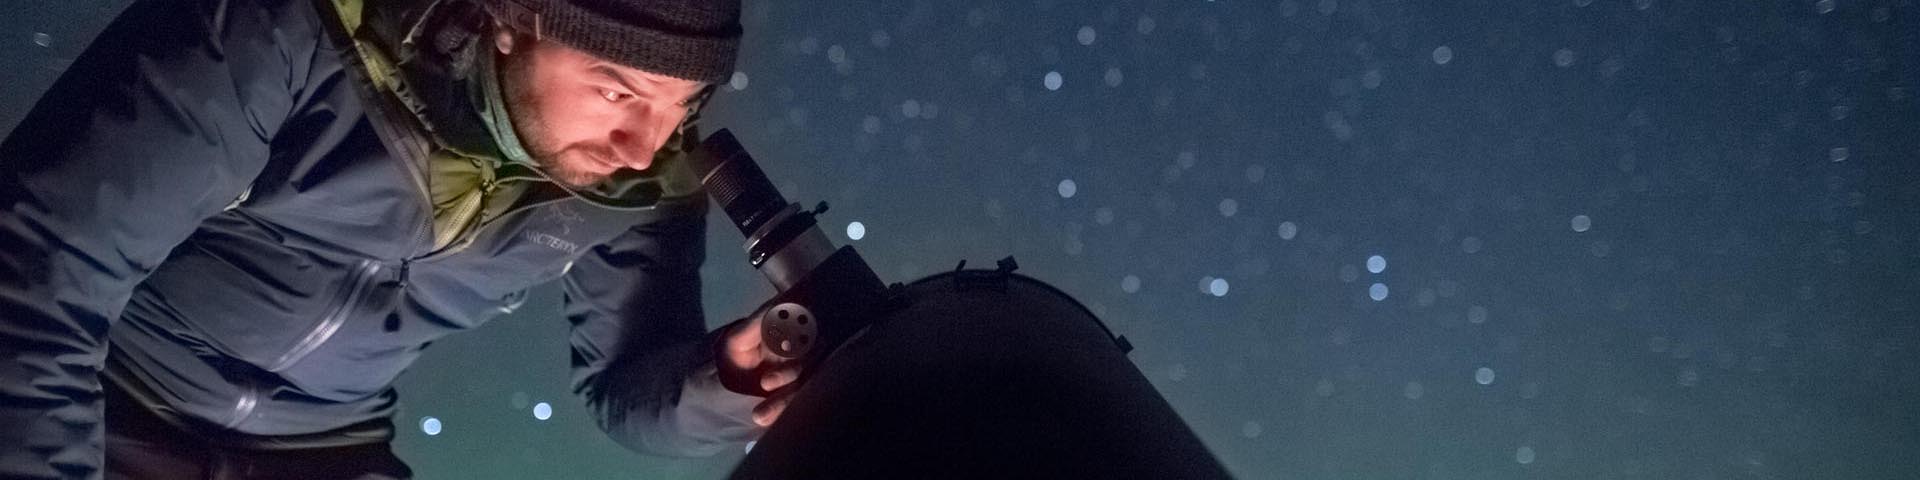 	Un visiteur observe le ciel étoilé à l'aide d'un télescope astronomique et s'émerveille devant la brillance des étoiles et la chorégraphie des aurores boréales dans la réserve de ciel étoilé